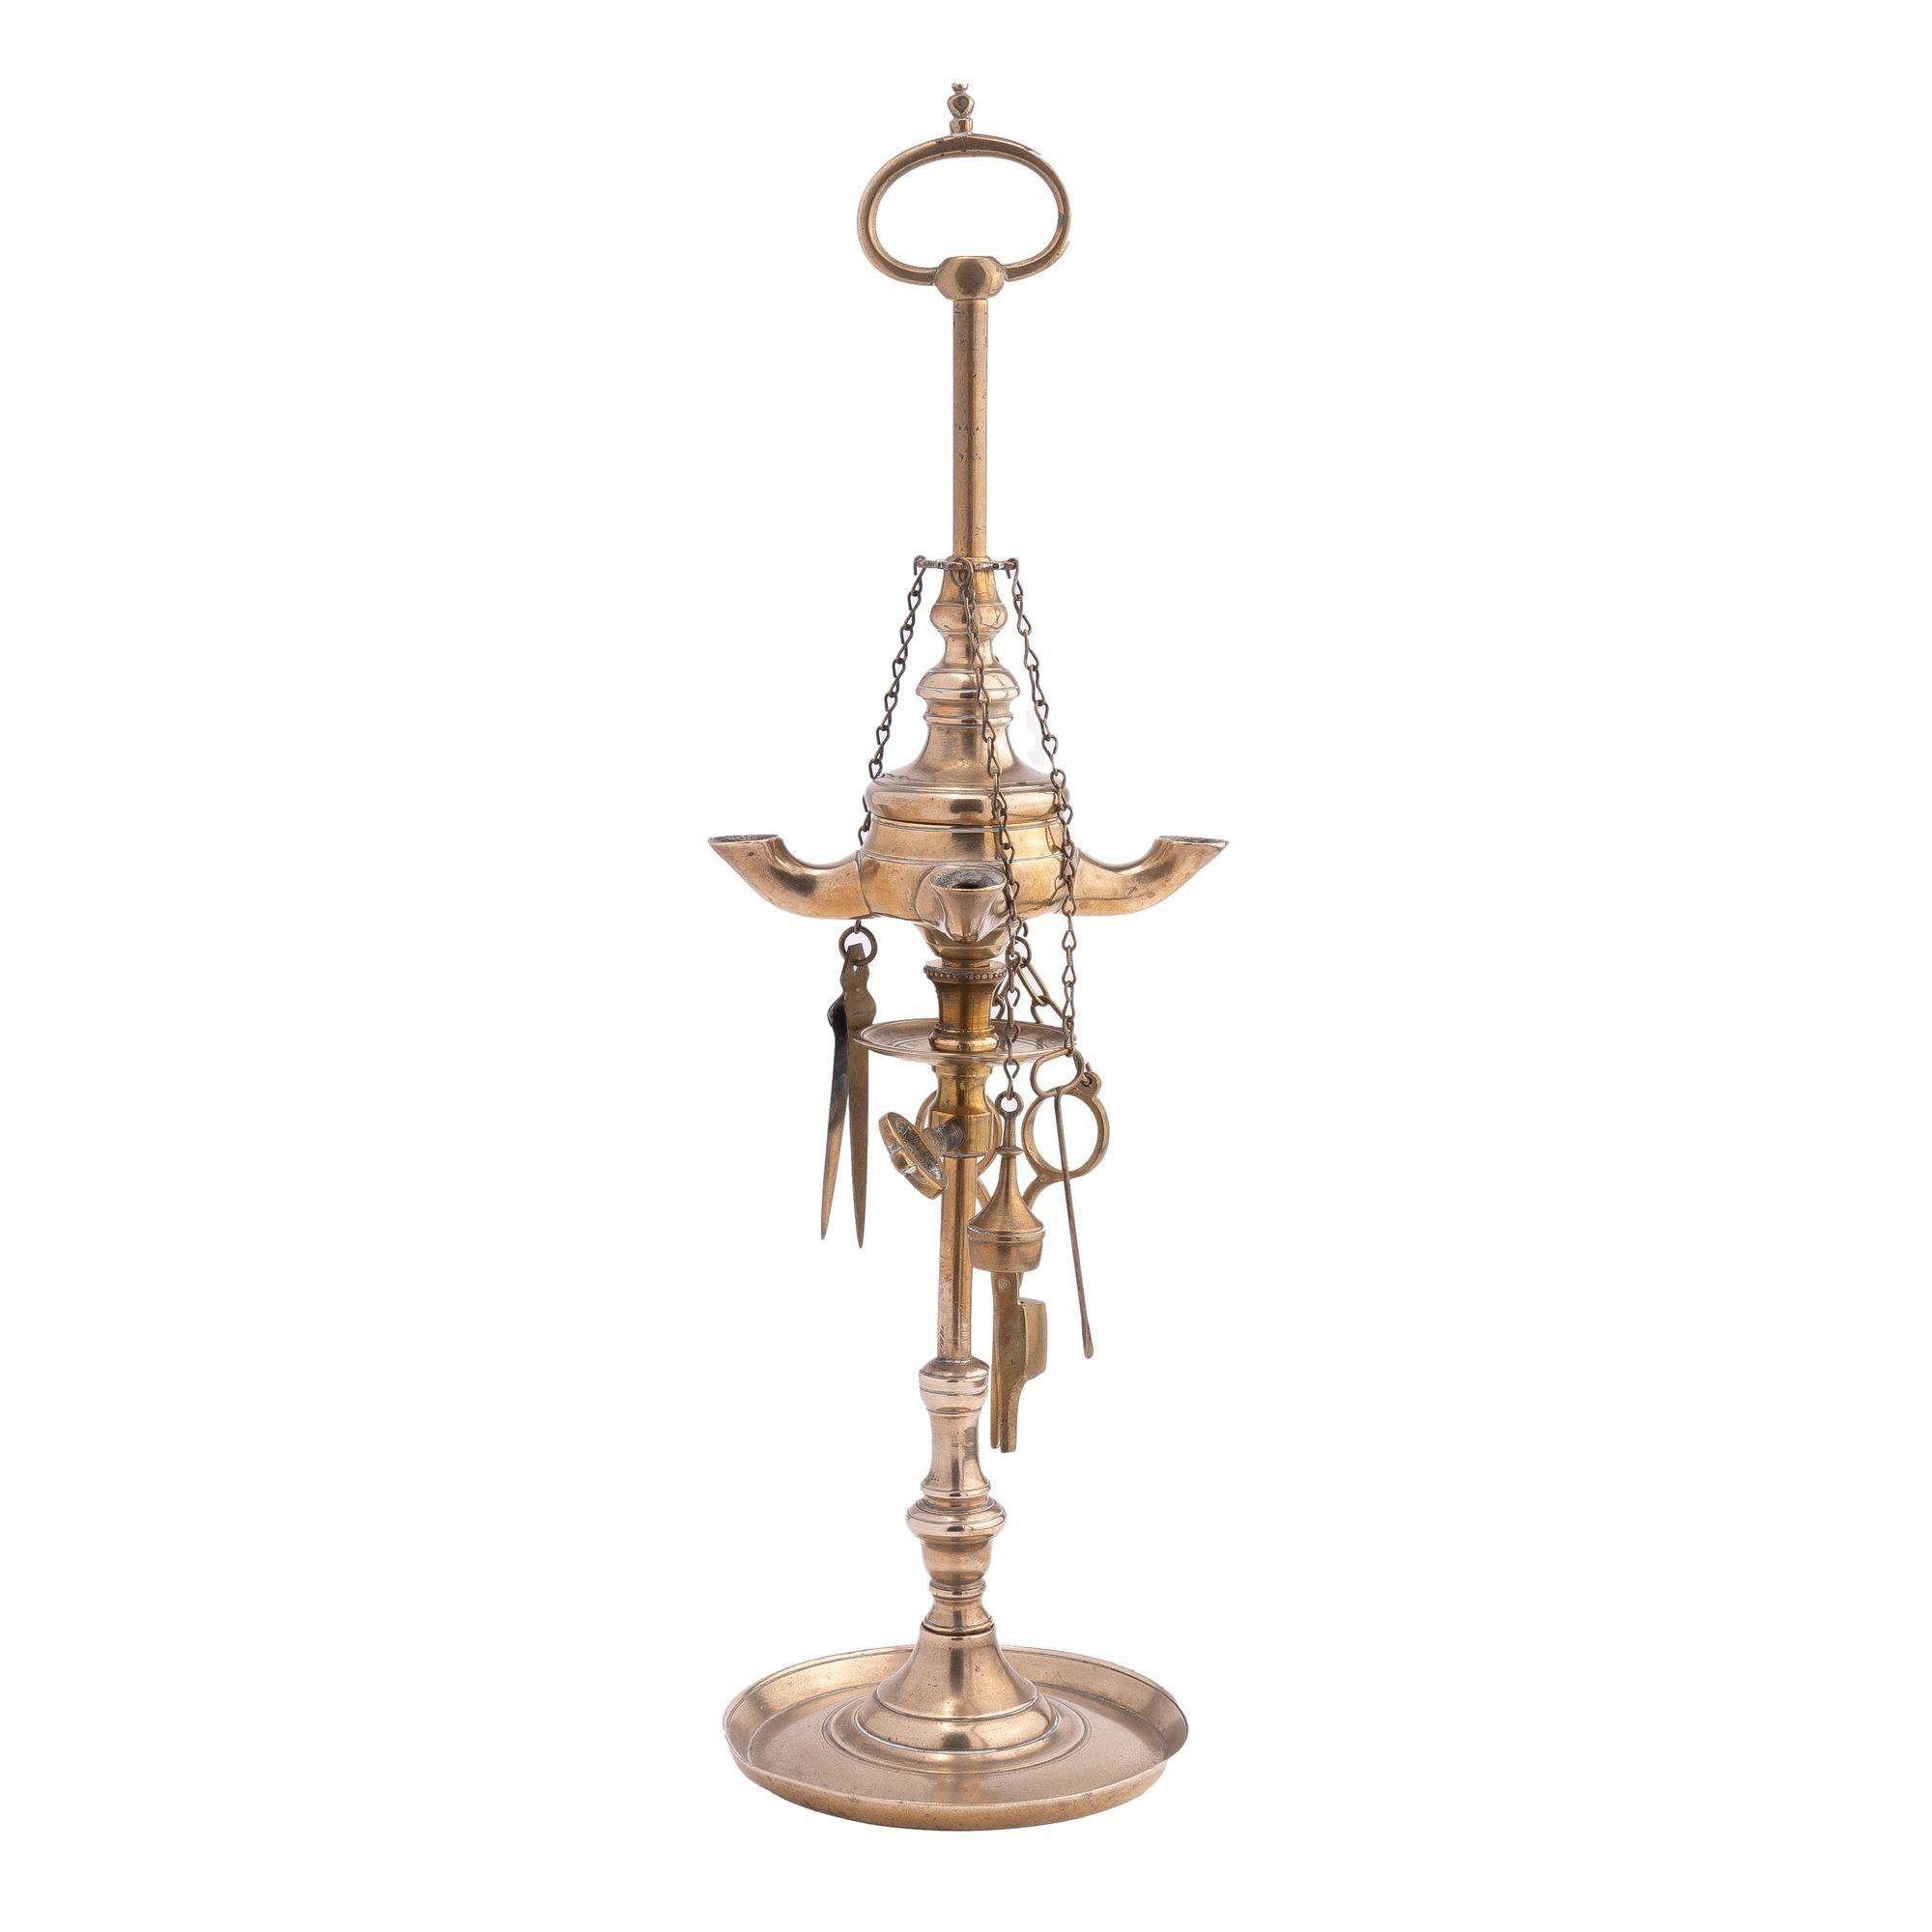 Vierflammige Luzerner Öllampe aus Messingguss mit vier hängenden Dochtwerkzeugen, einer verstellbaren Auffangschale und einem Tragegriff mit Schlaufe am oberen Ende des Stabes.

Italien, um 1810.